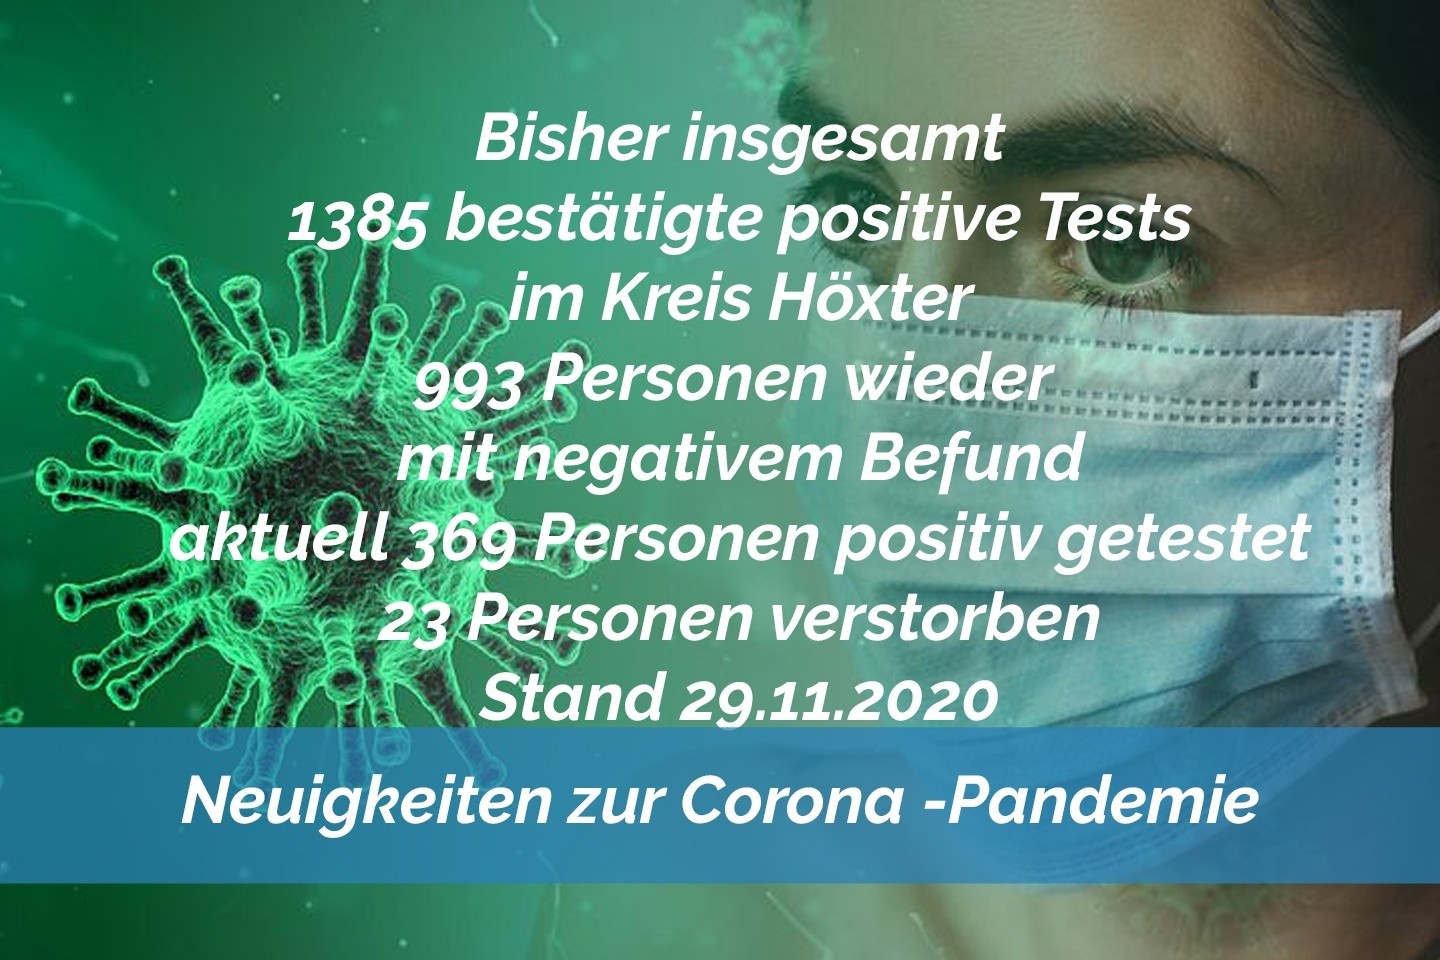 Update 29. November: 39 weitere amtlich positive Tests im Kreis Höxter